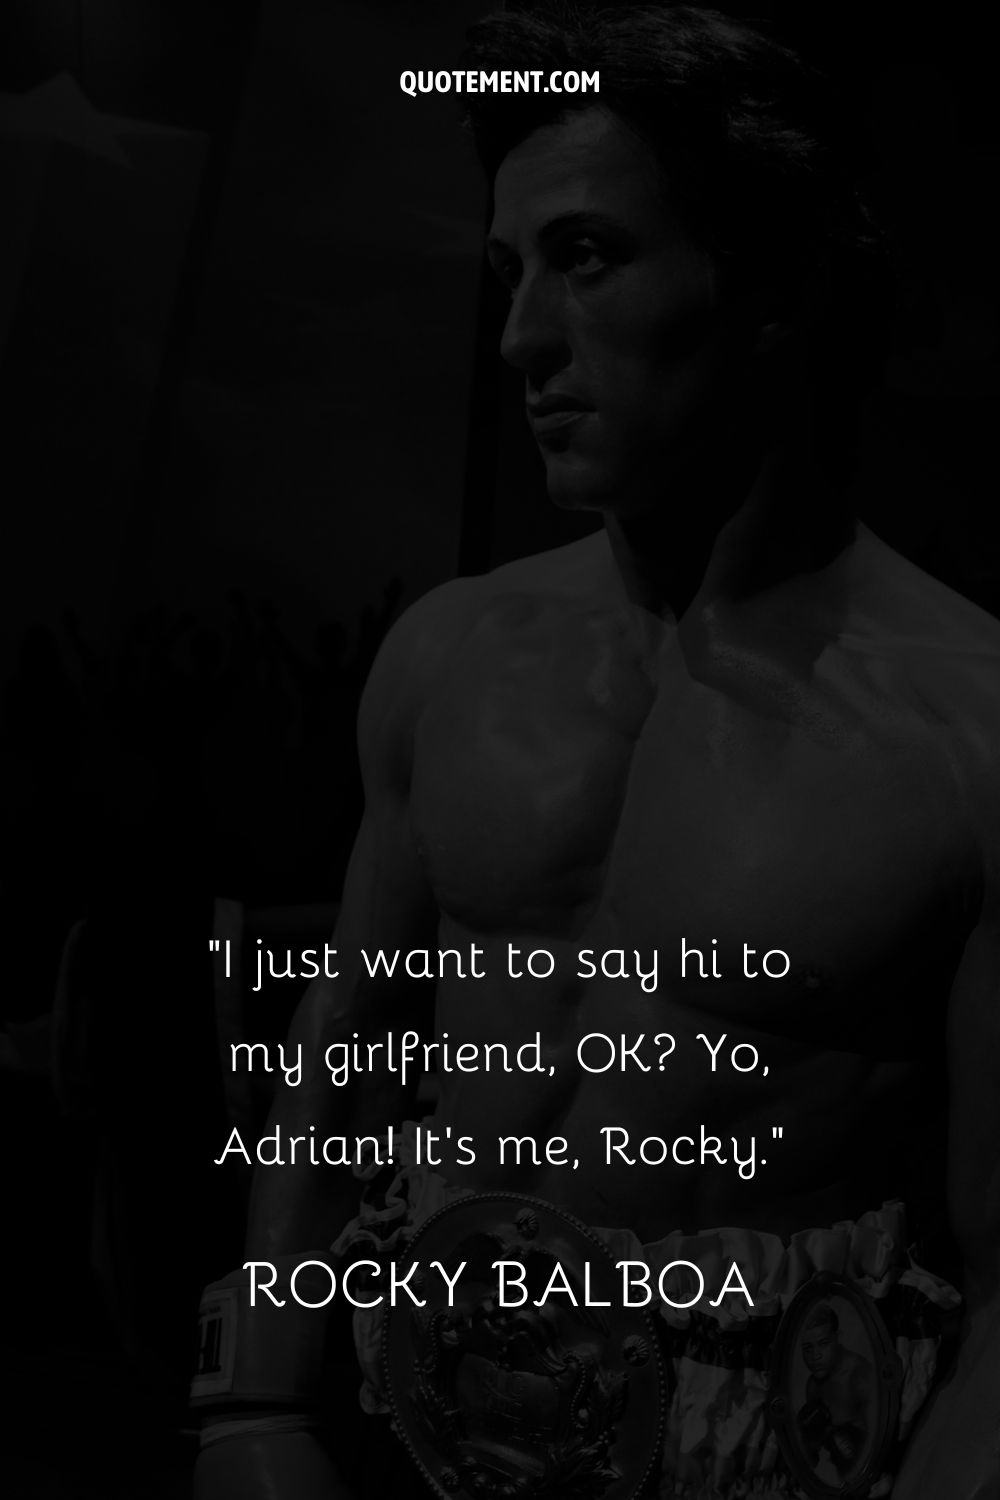 I just want to say hi to my girlfriend, OK Yo, Adrian! It’s me, Rocky